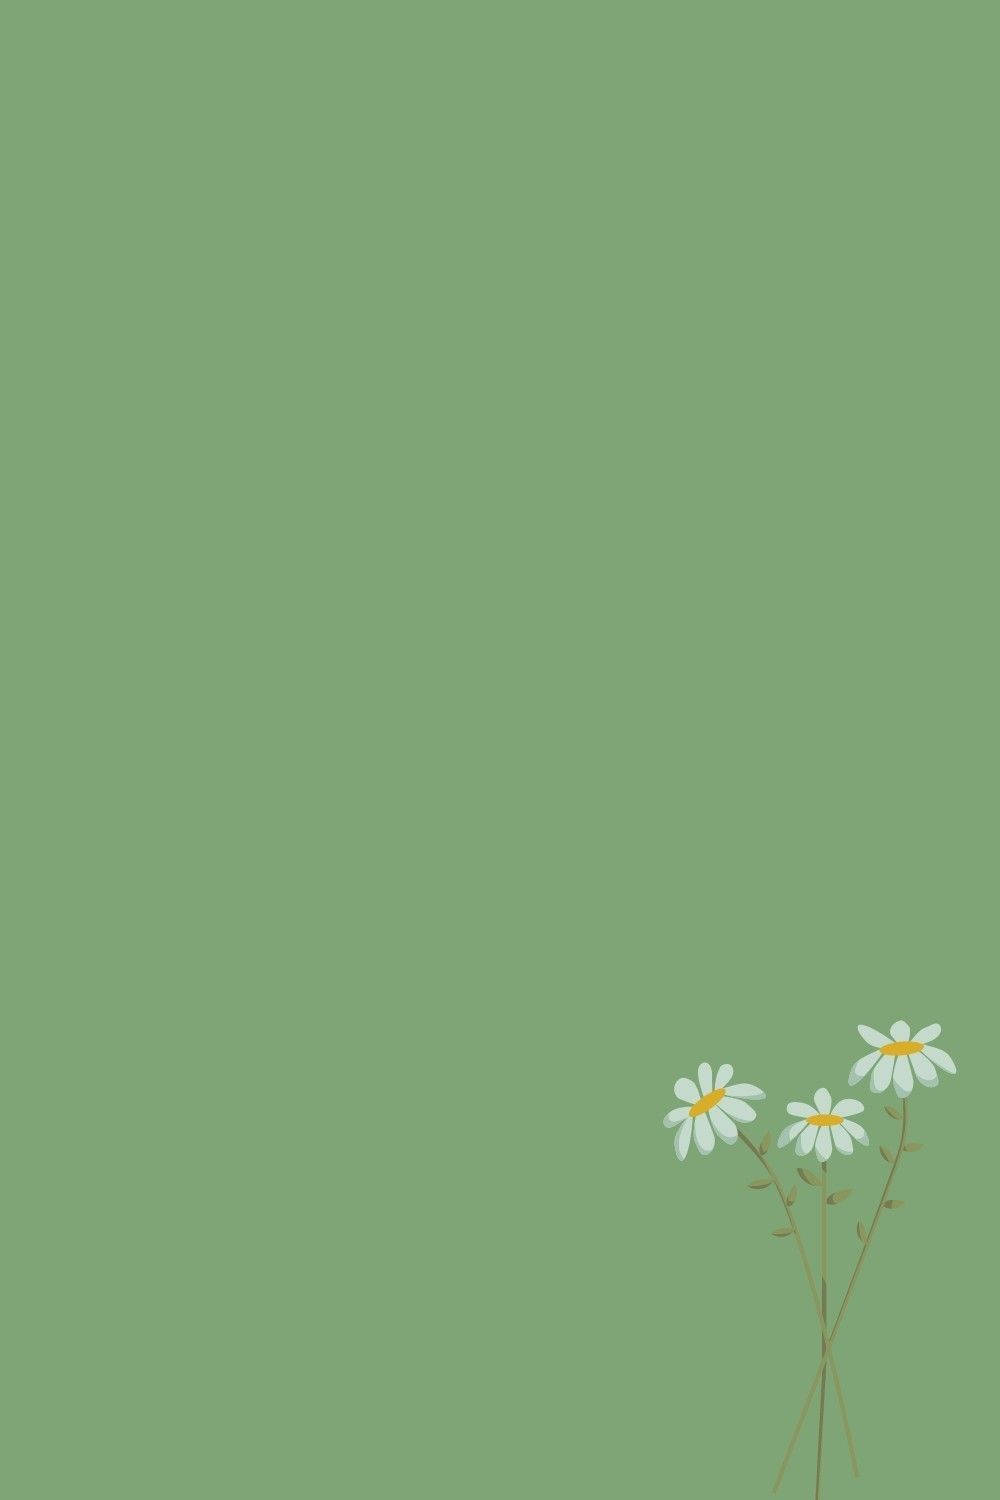 Minimalist Hijau Flower Wallpaper